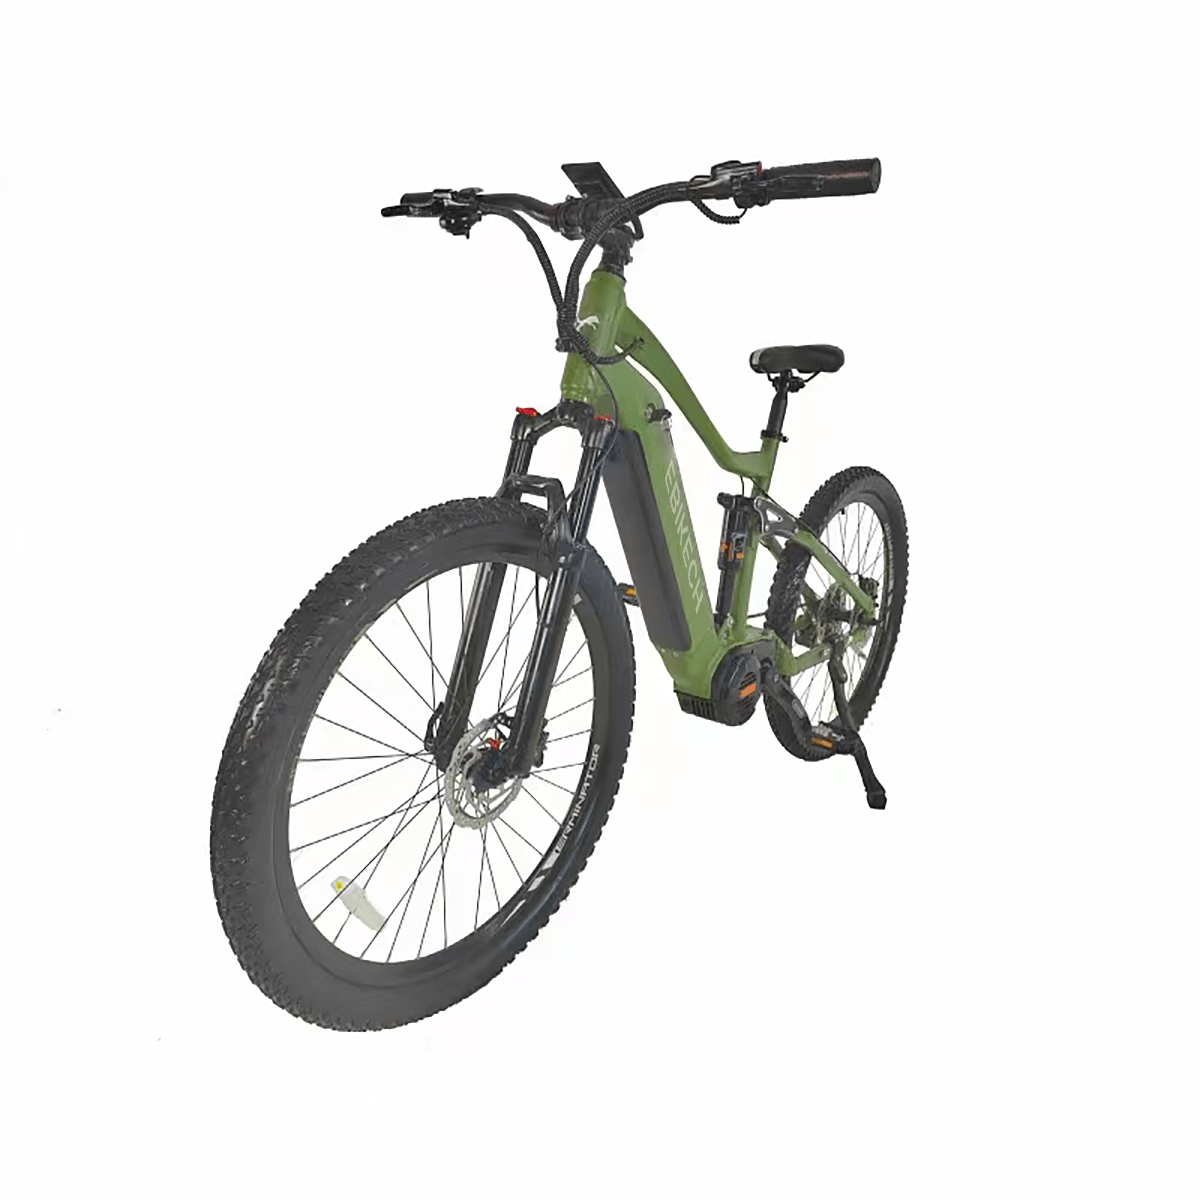 S4 electric mountain bike